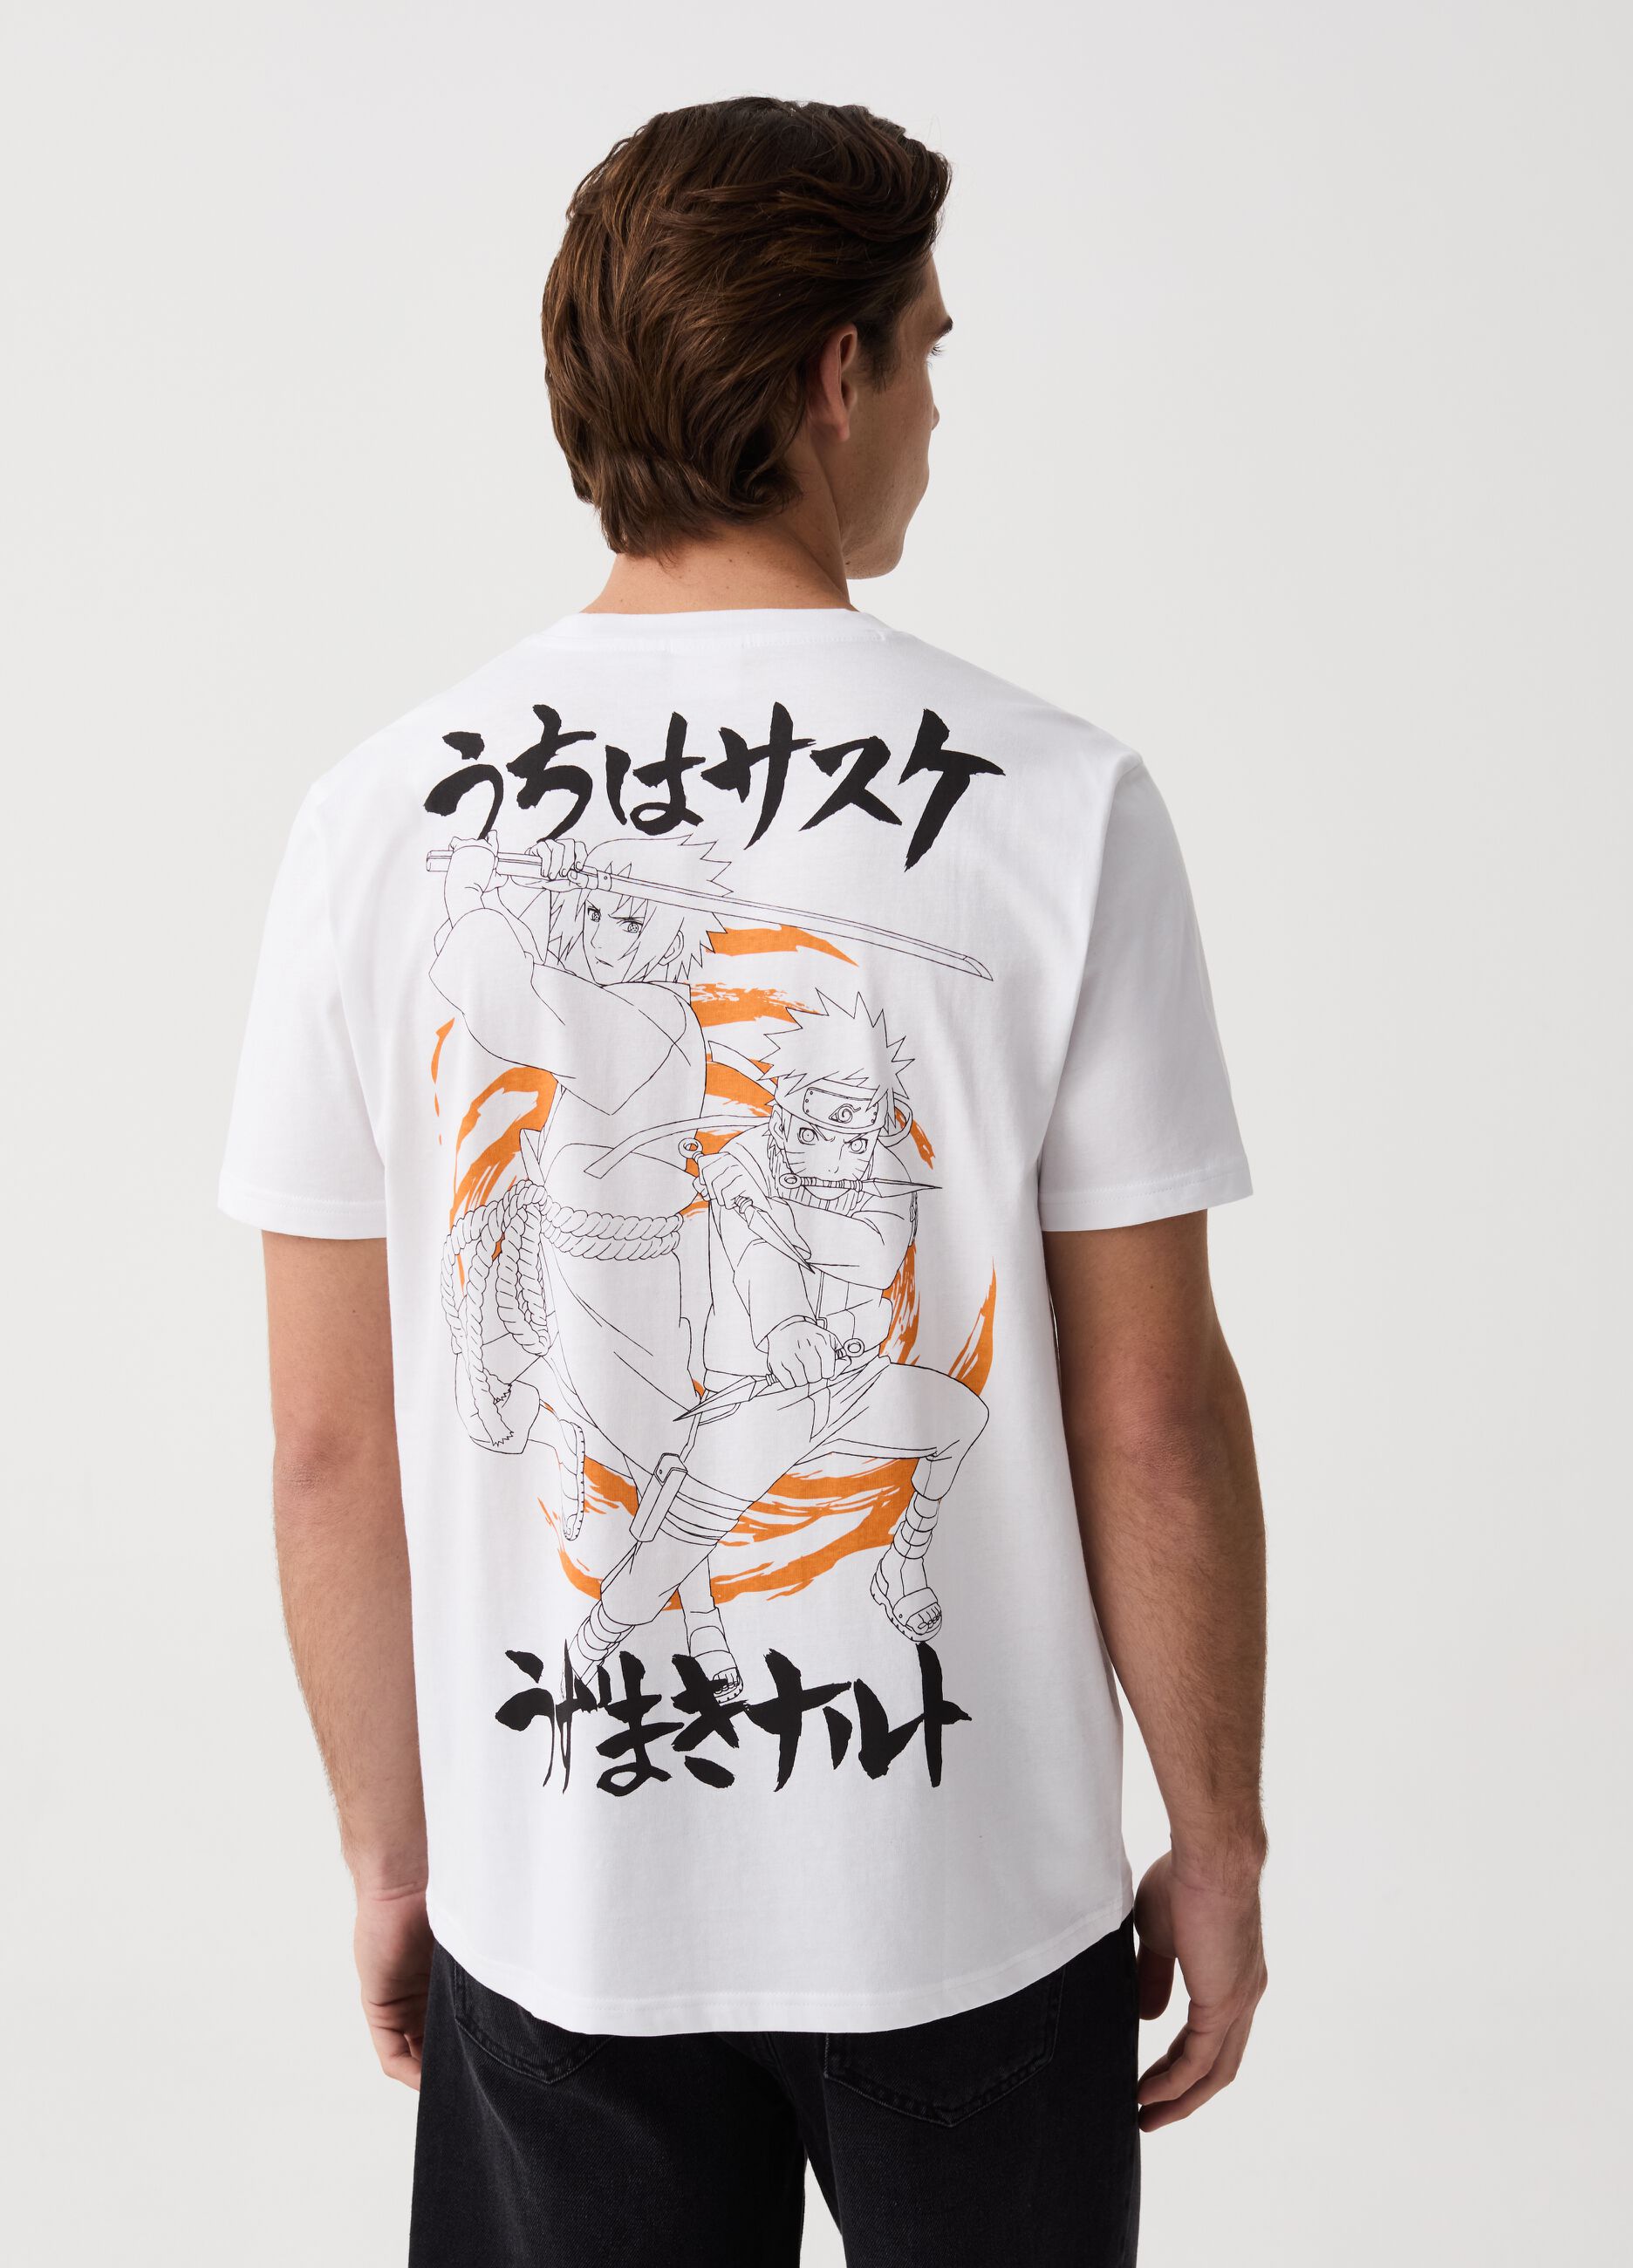 Camiseta con estampado Naruto Shippuden